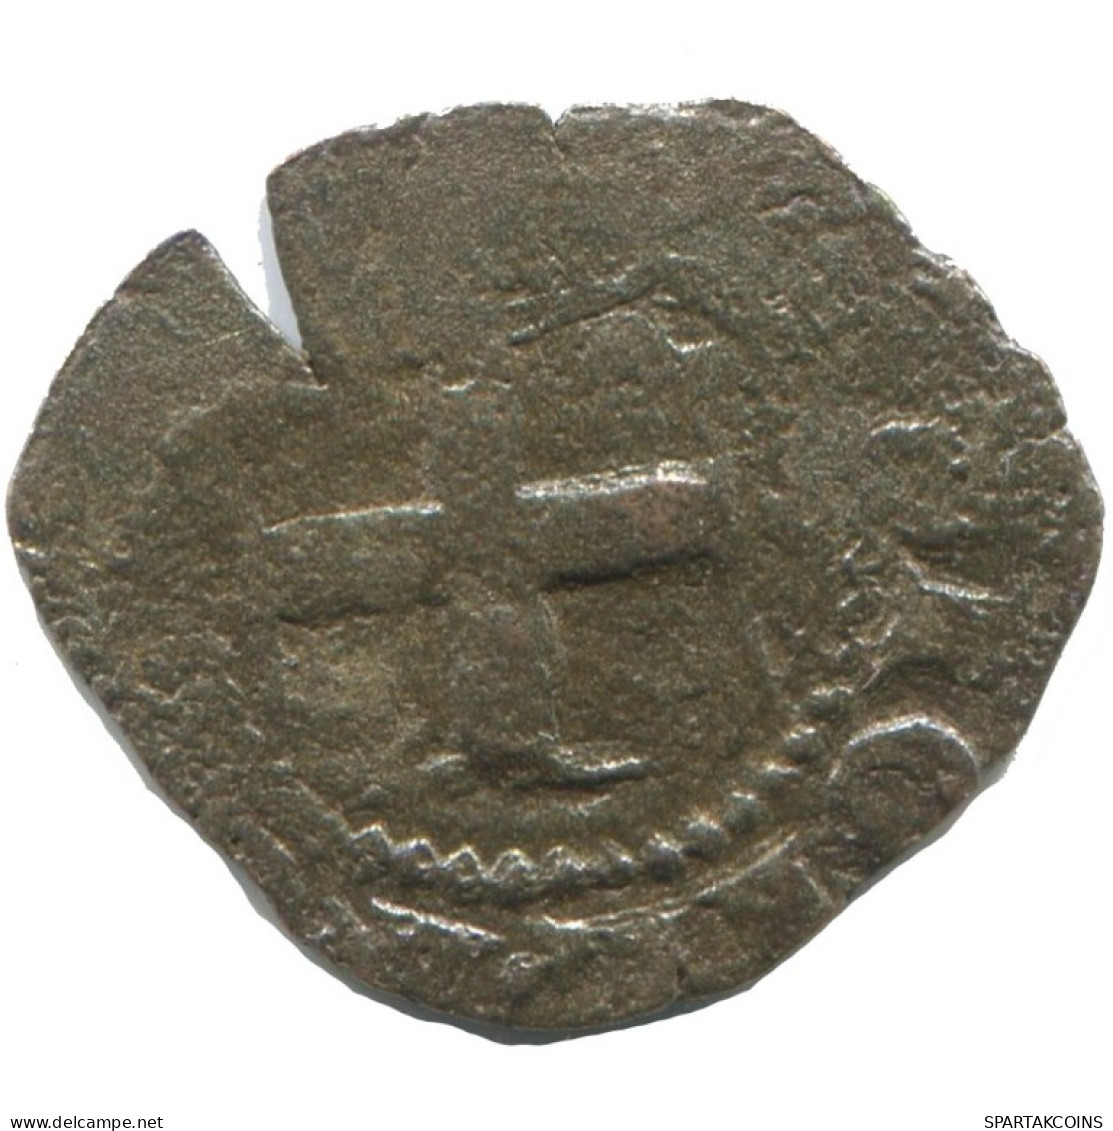 CRUSADER CROSS Authentic Original MEDIEVAL EUROPEAN Coin 0.6g/16mm #AC328.8.E.A - Altri – Europa